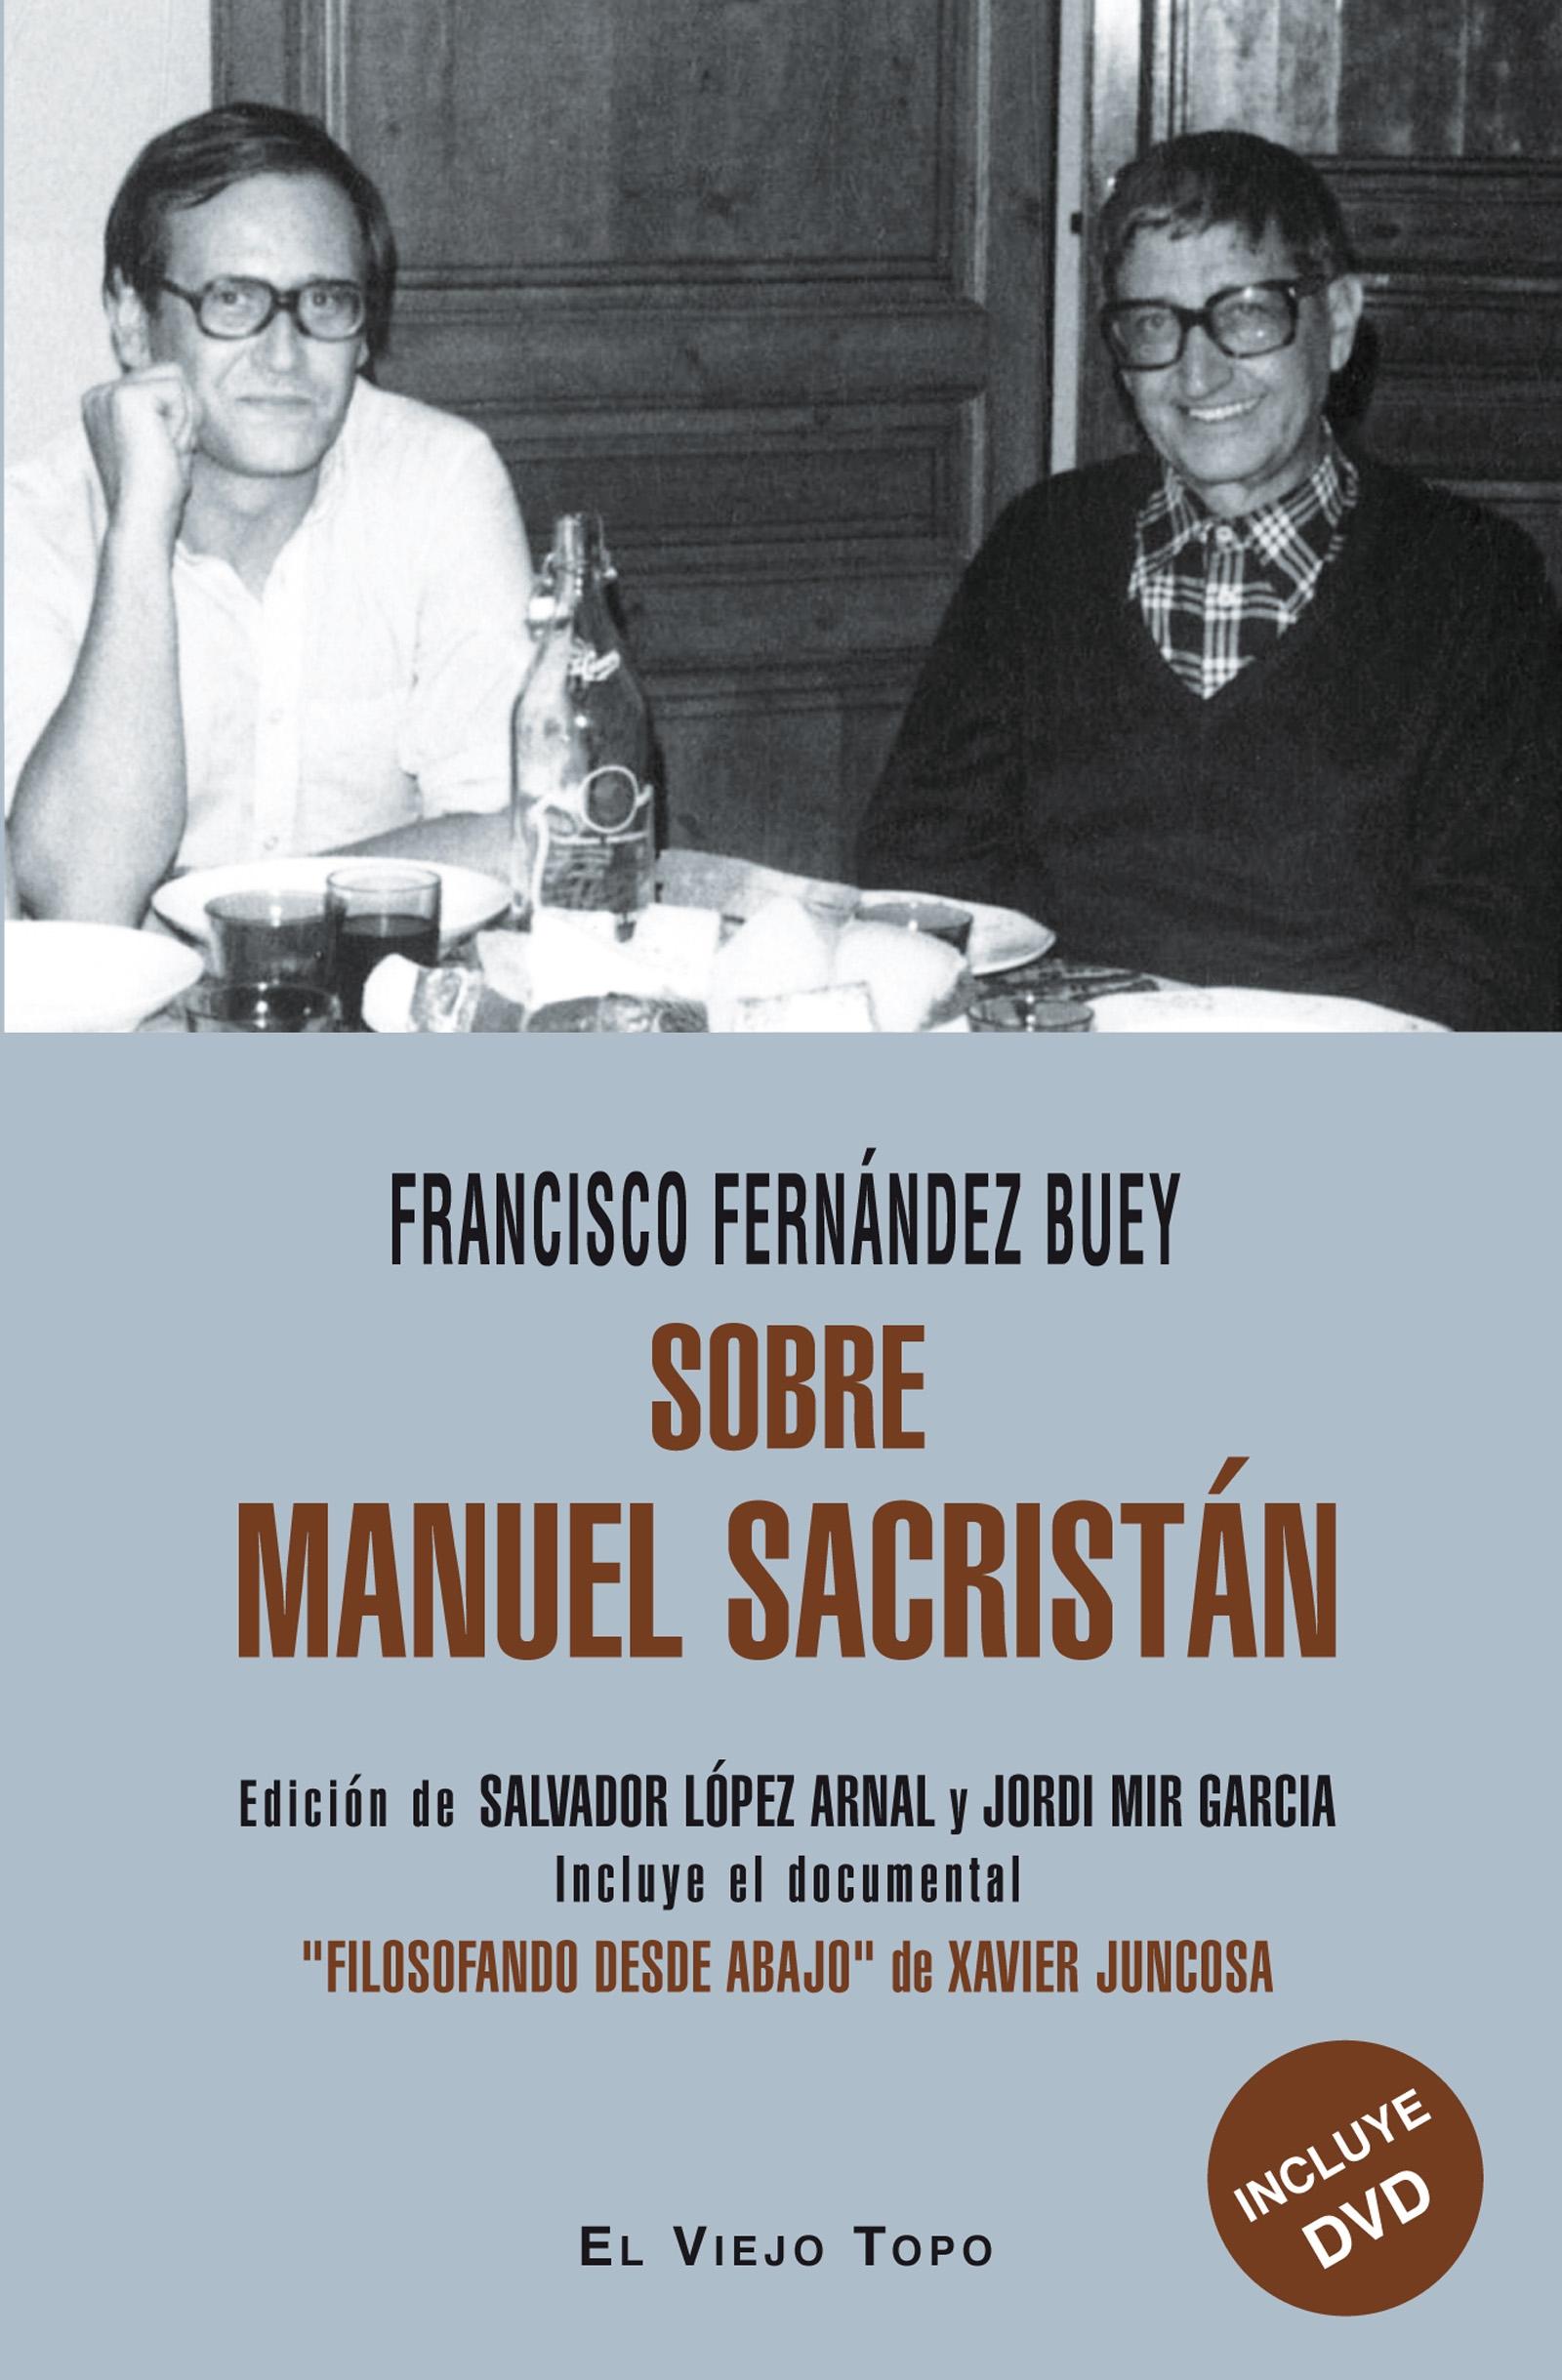 Sobre Manuel Sacristán "Libro + Dvd con el Documental Filosofando desde Abajo de Xavier Juncosa"